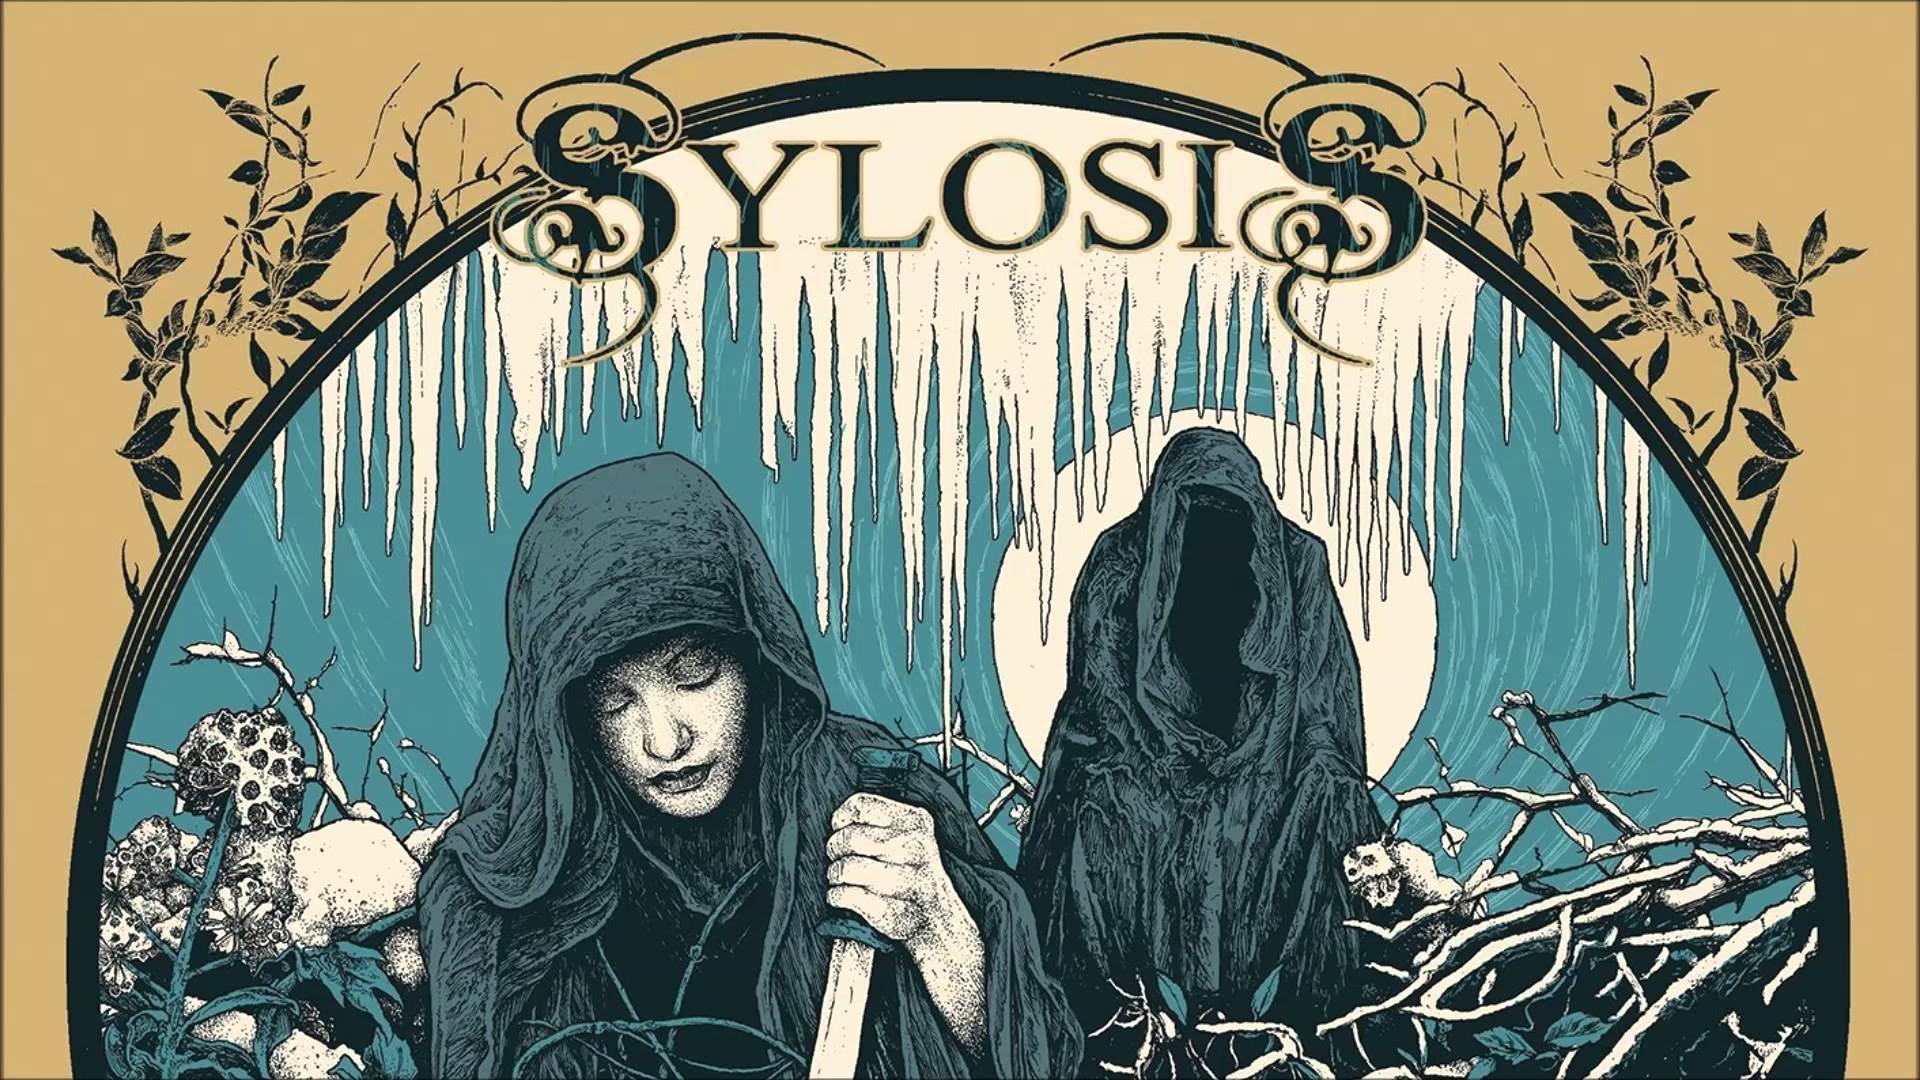 Sylosis #4